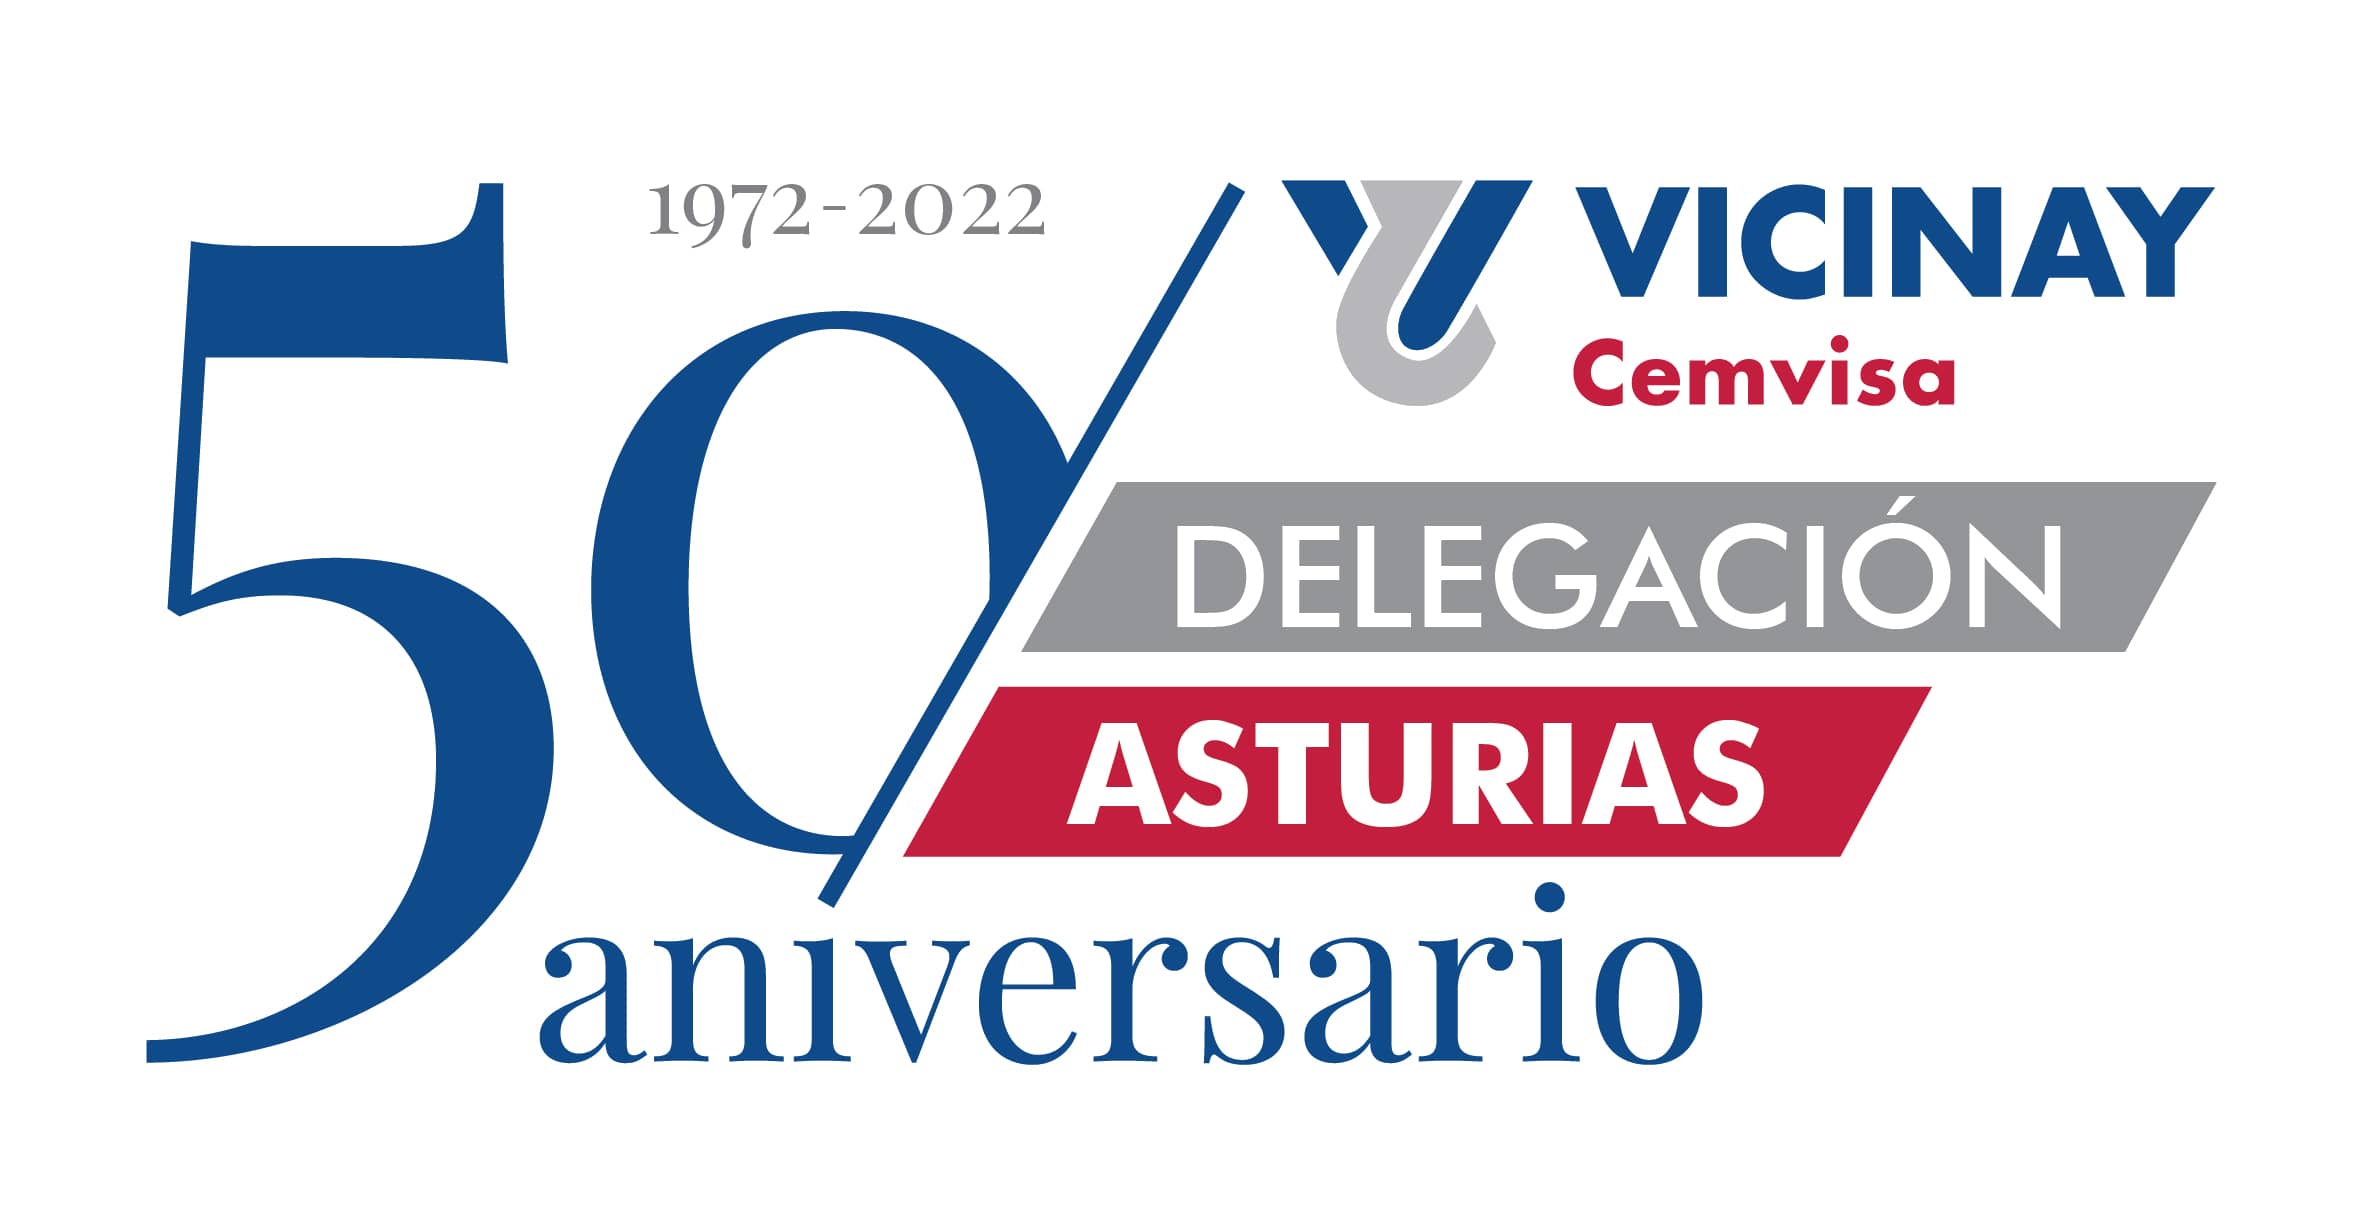 Celebramos el 50 aniversario de nuestra delegación en Asturias